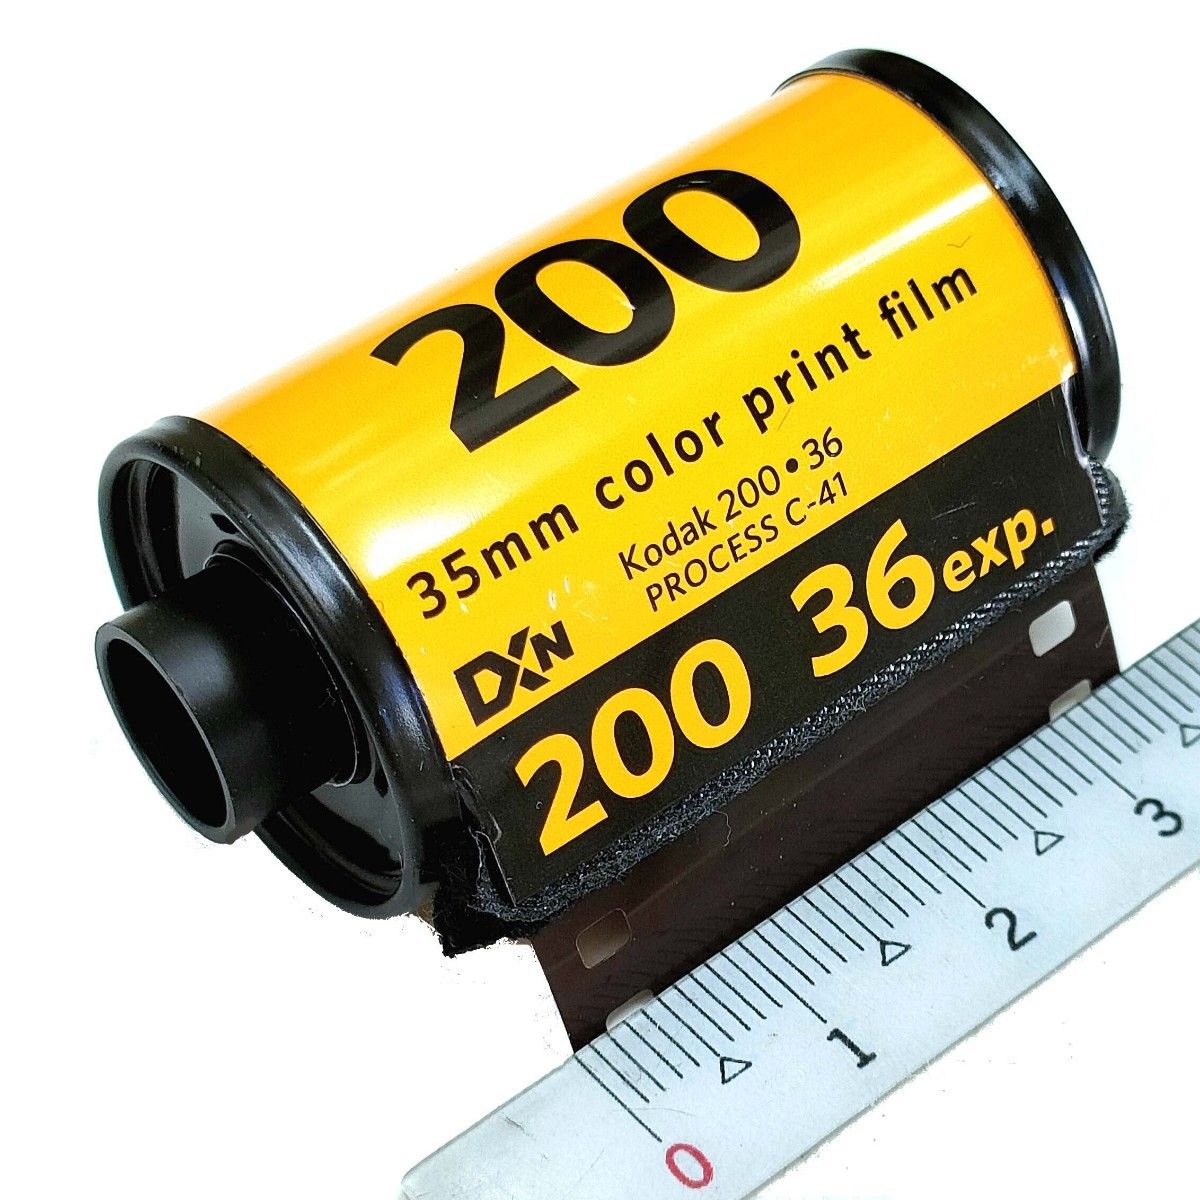 [5本セット] GOLD 200-36枚撮 Kodak ネガカラーフィルム 135/35mm 新品 コダック ネガフィルム